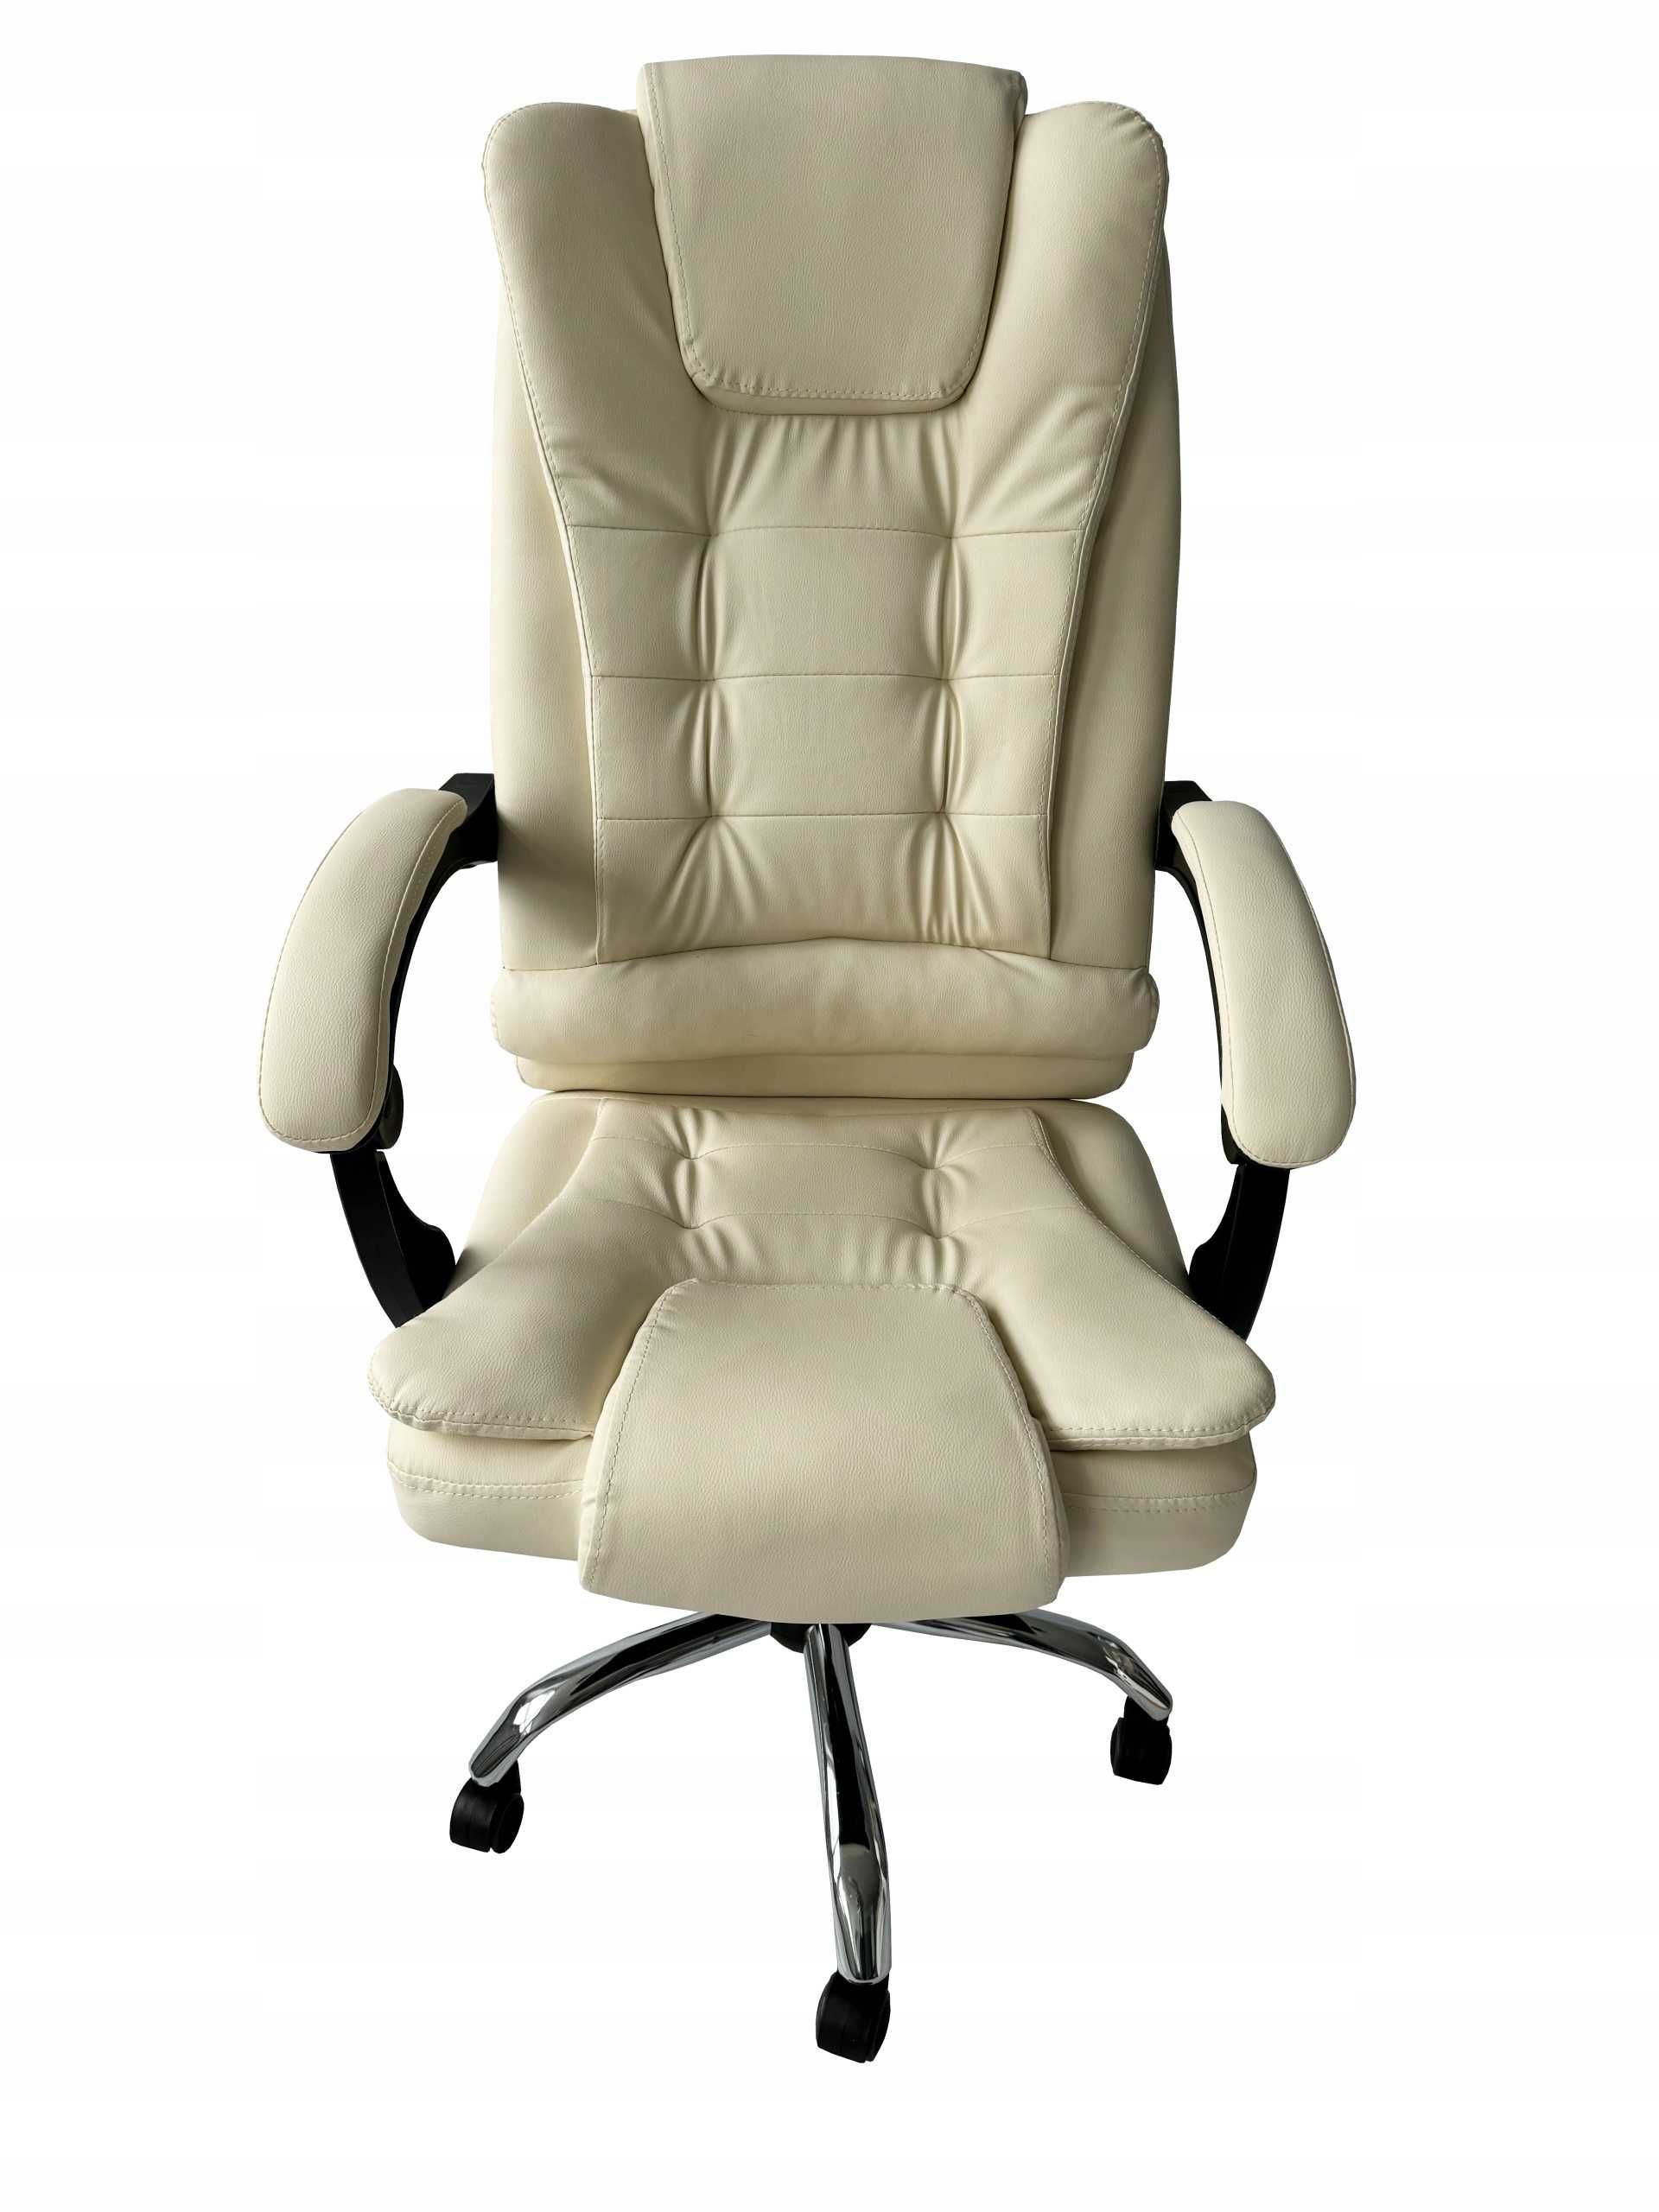 Крісло офісне обертове WF-J06. Розпродаж залишків!!!